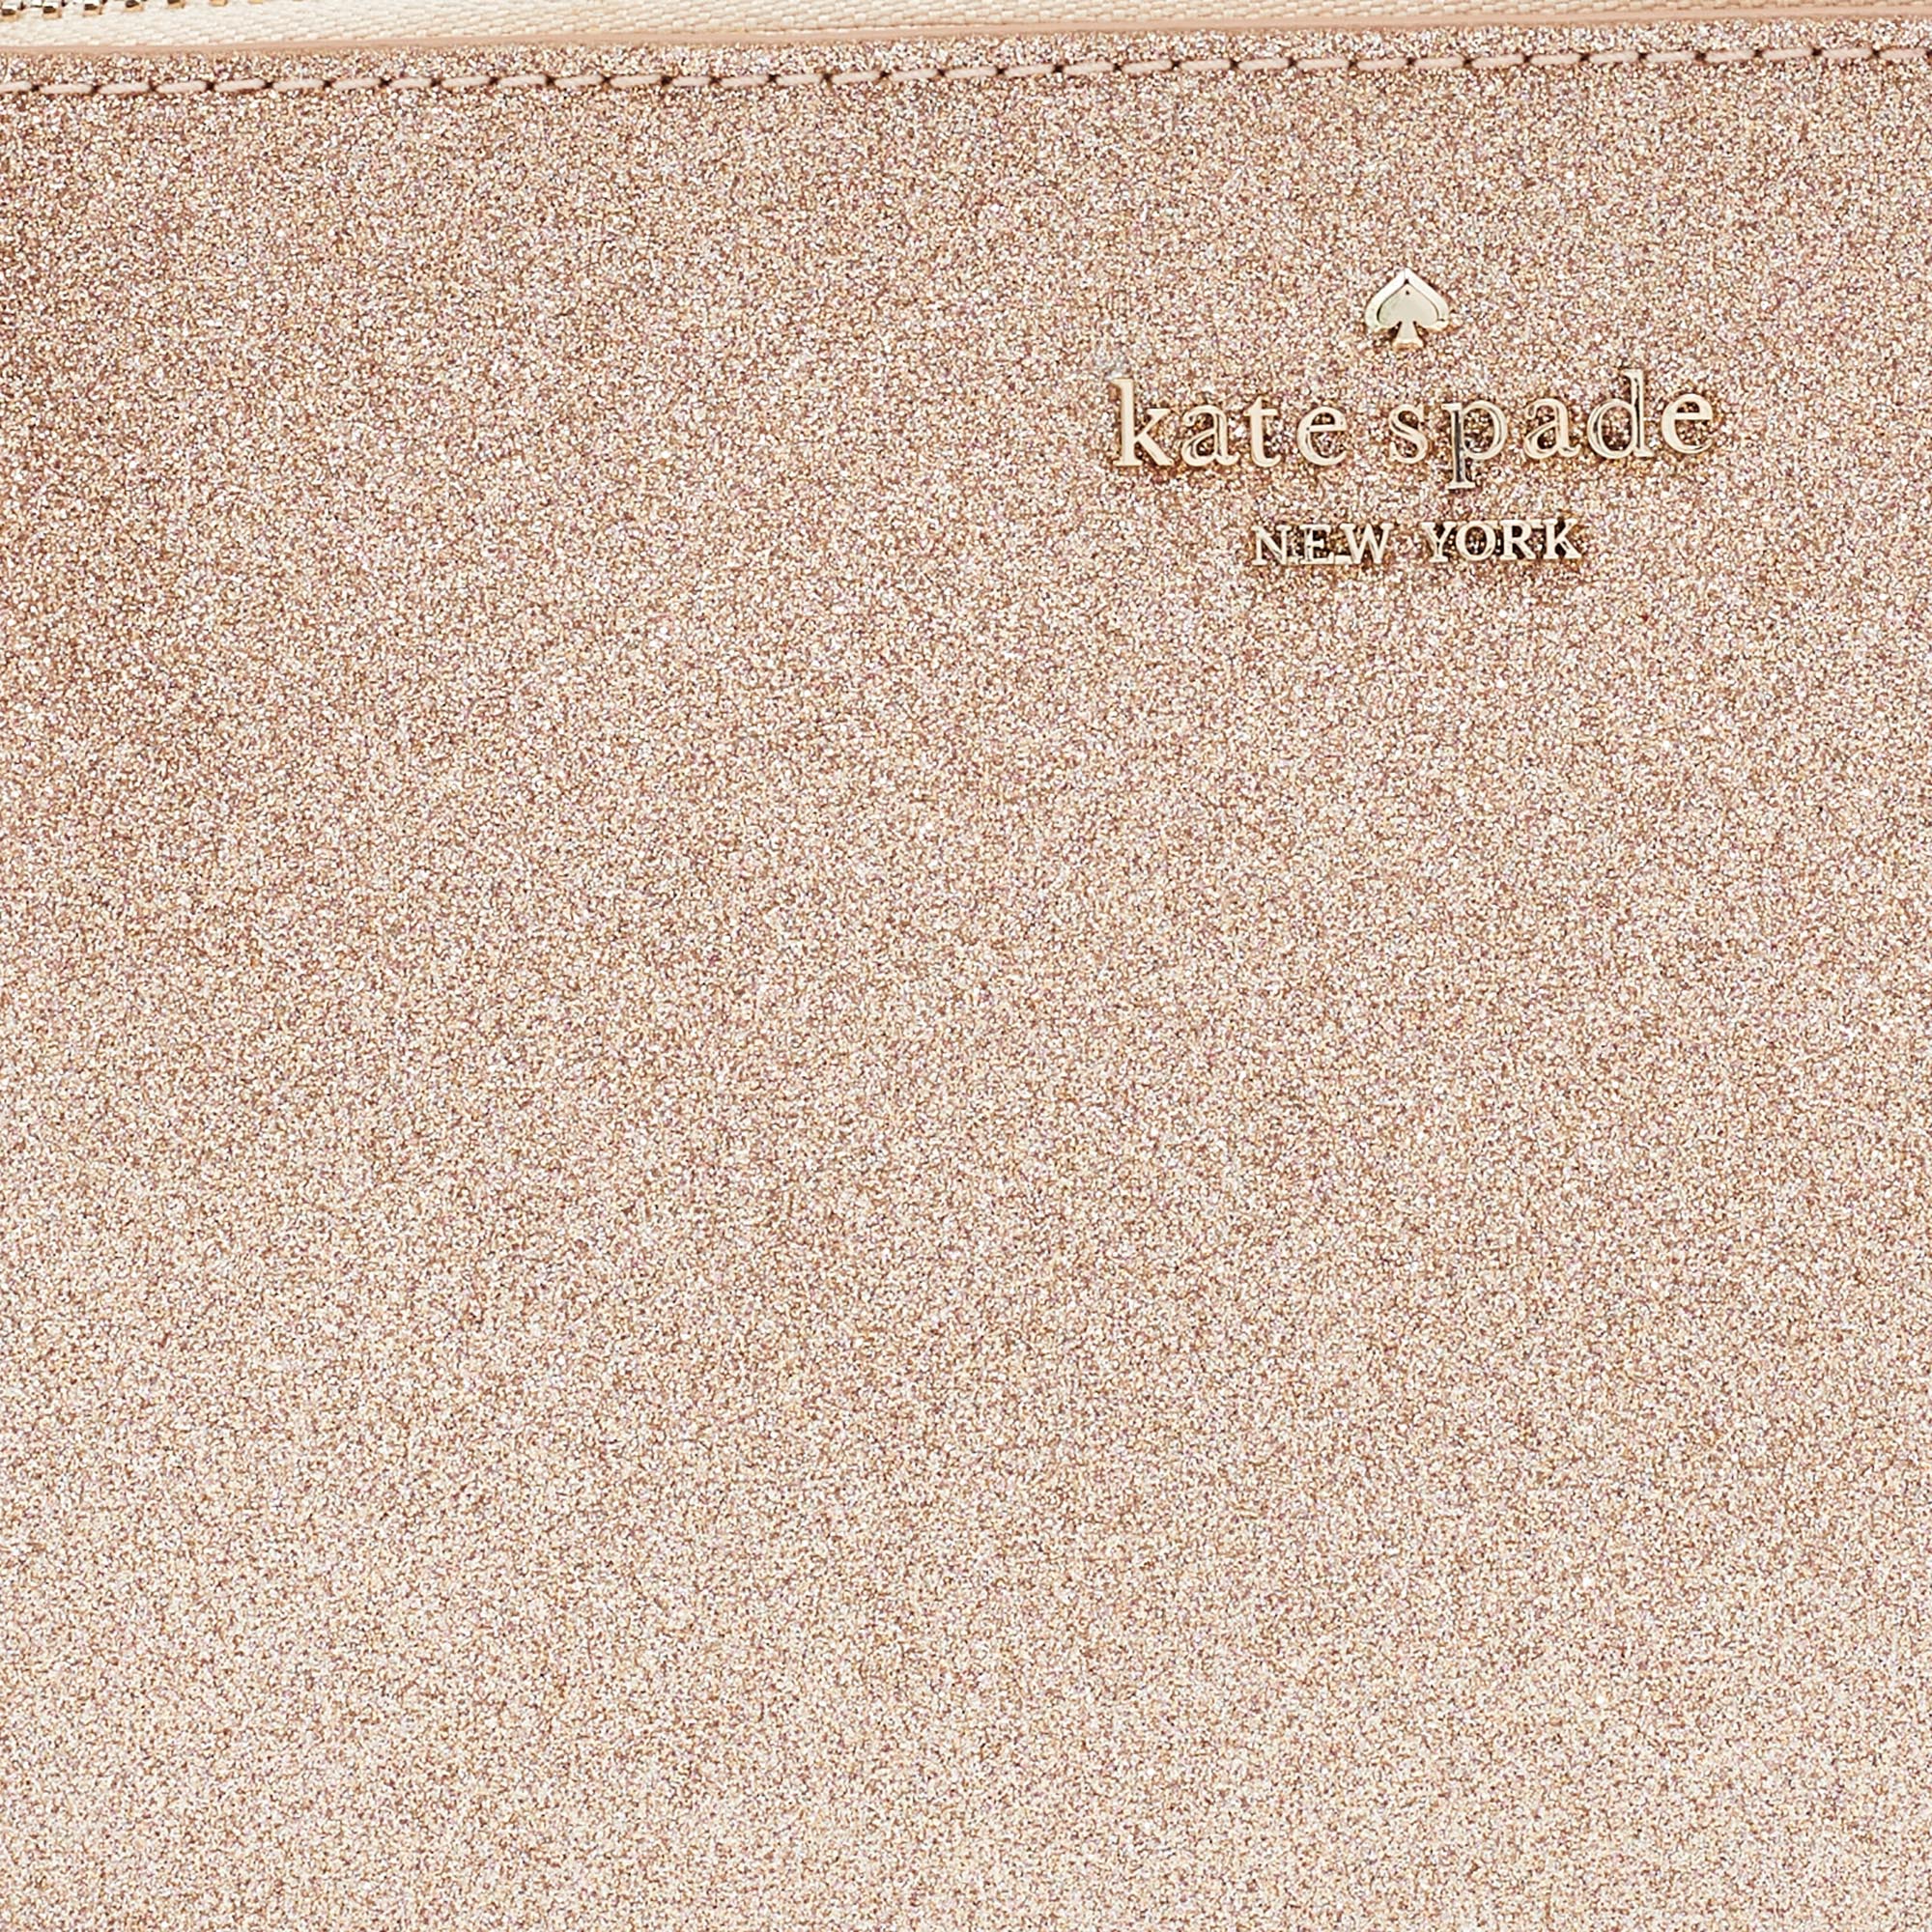 Kate Spade Rose Gold/Pink Glitter And Leather Shoulder Bag